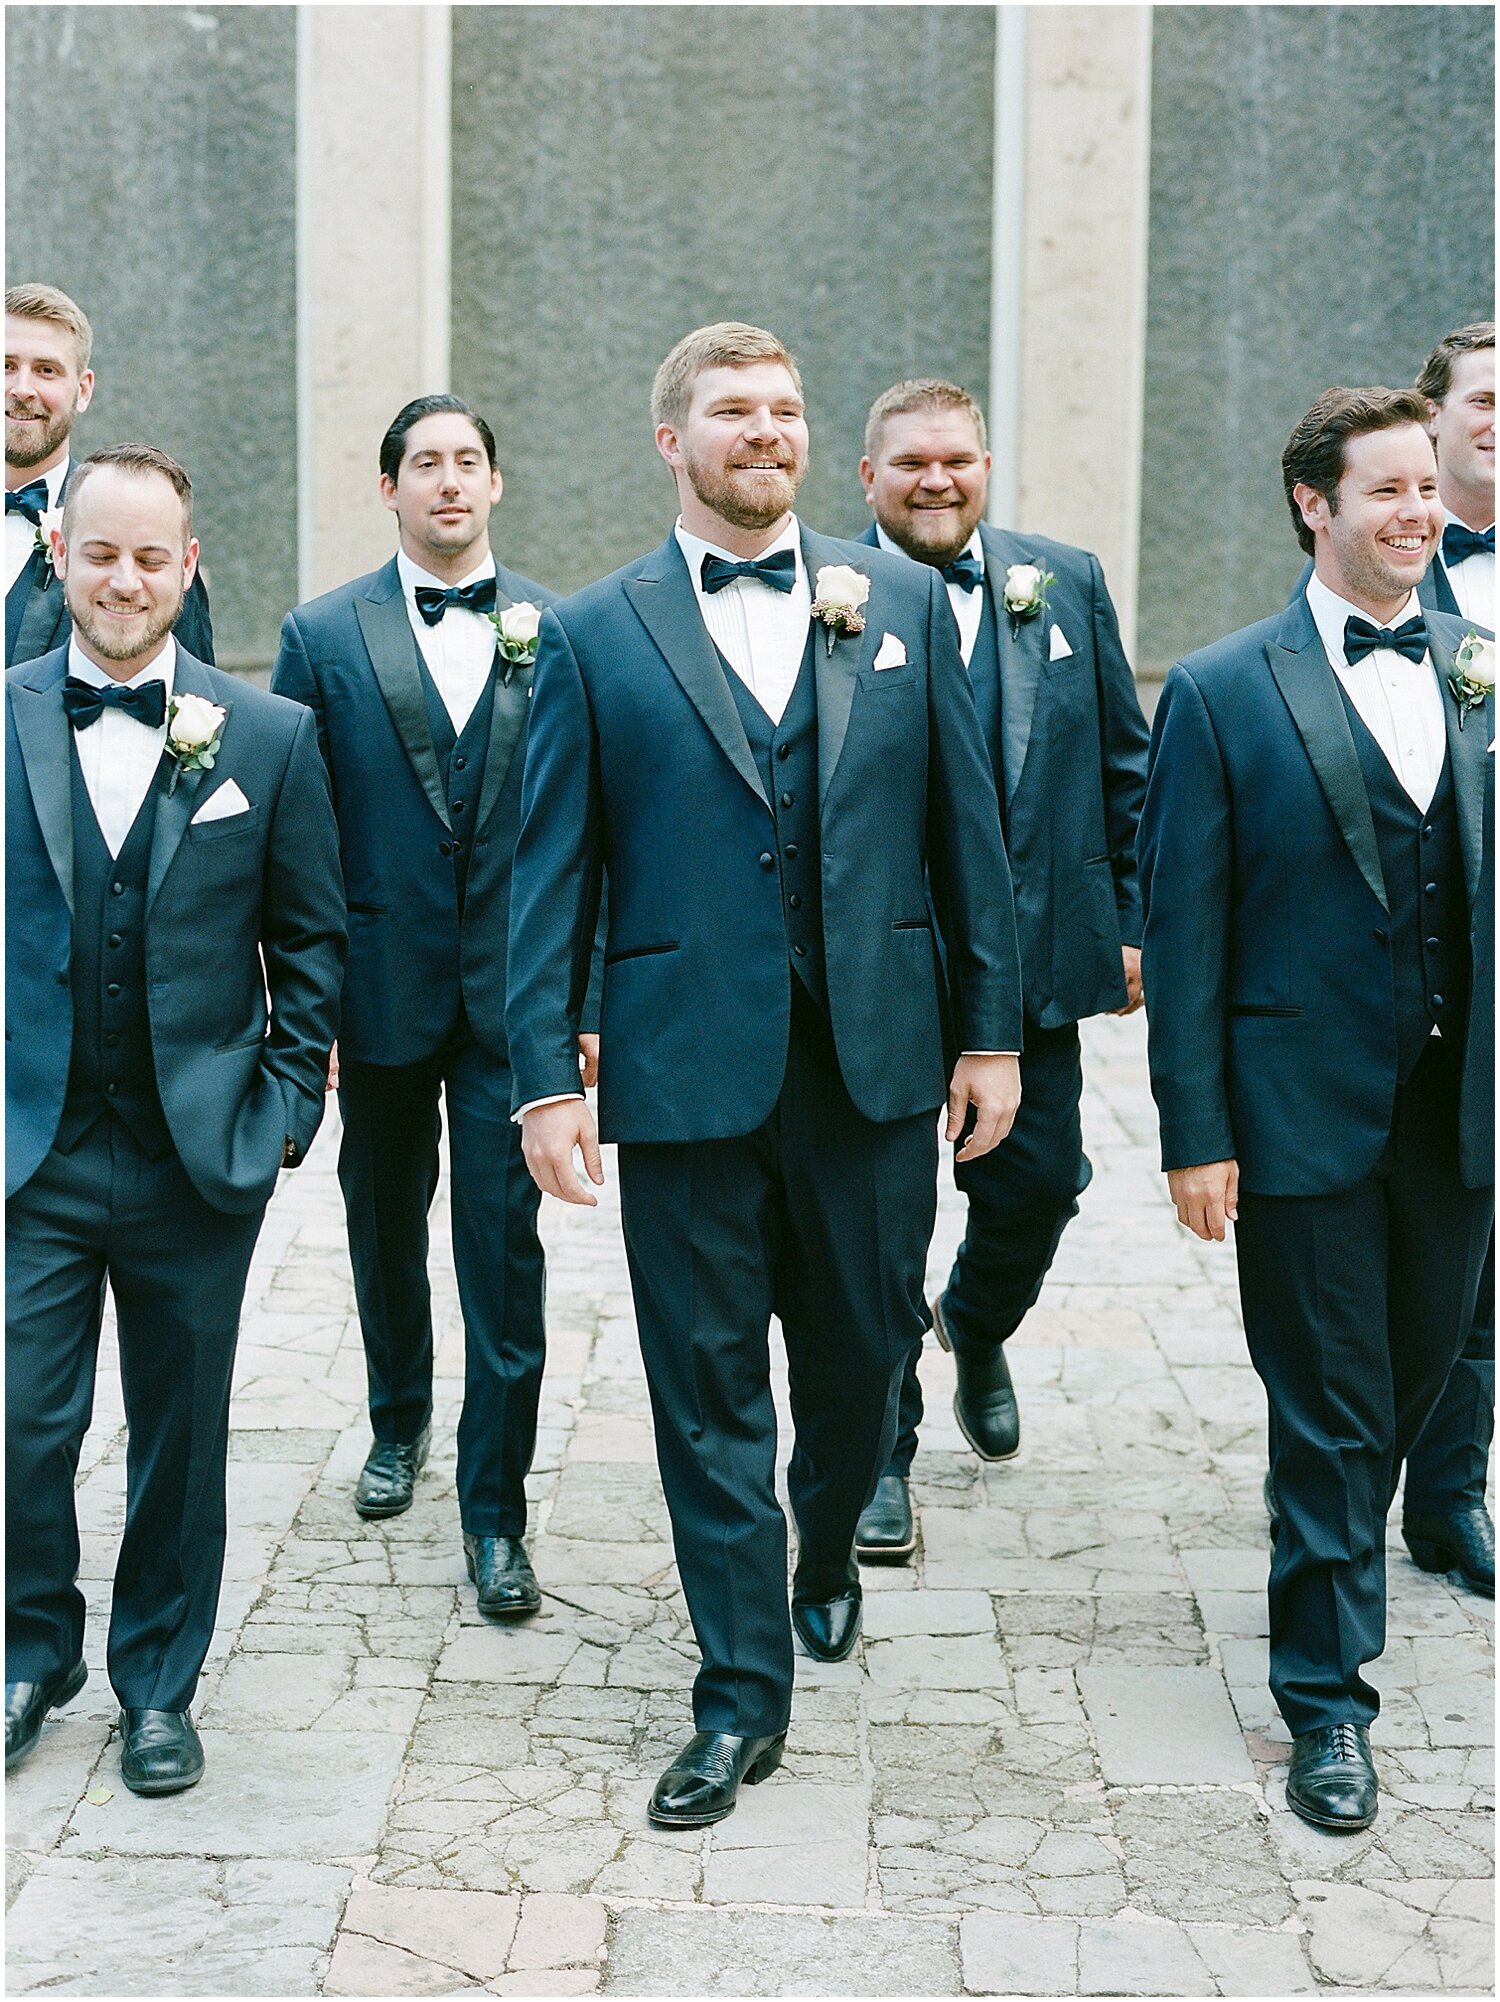  groom and groomsmen  